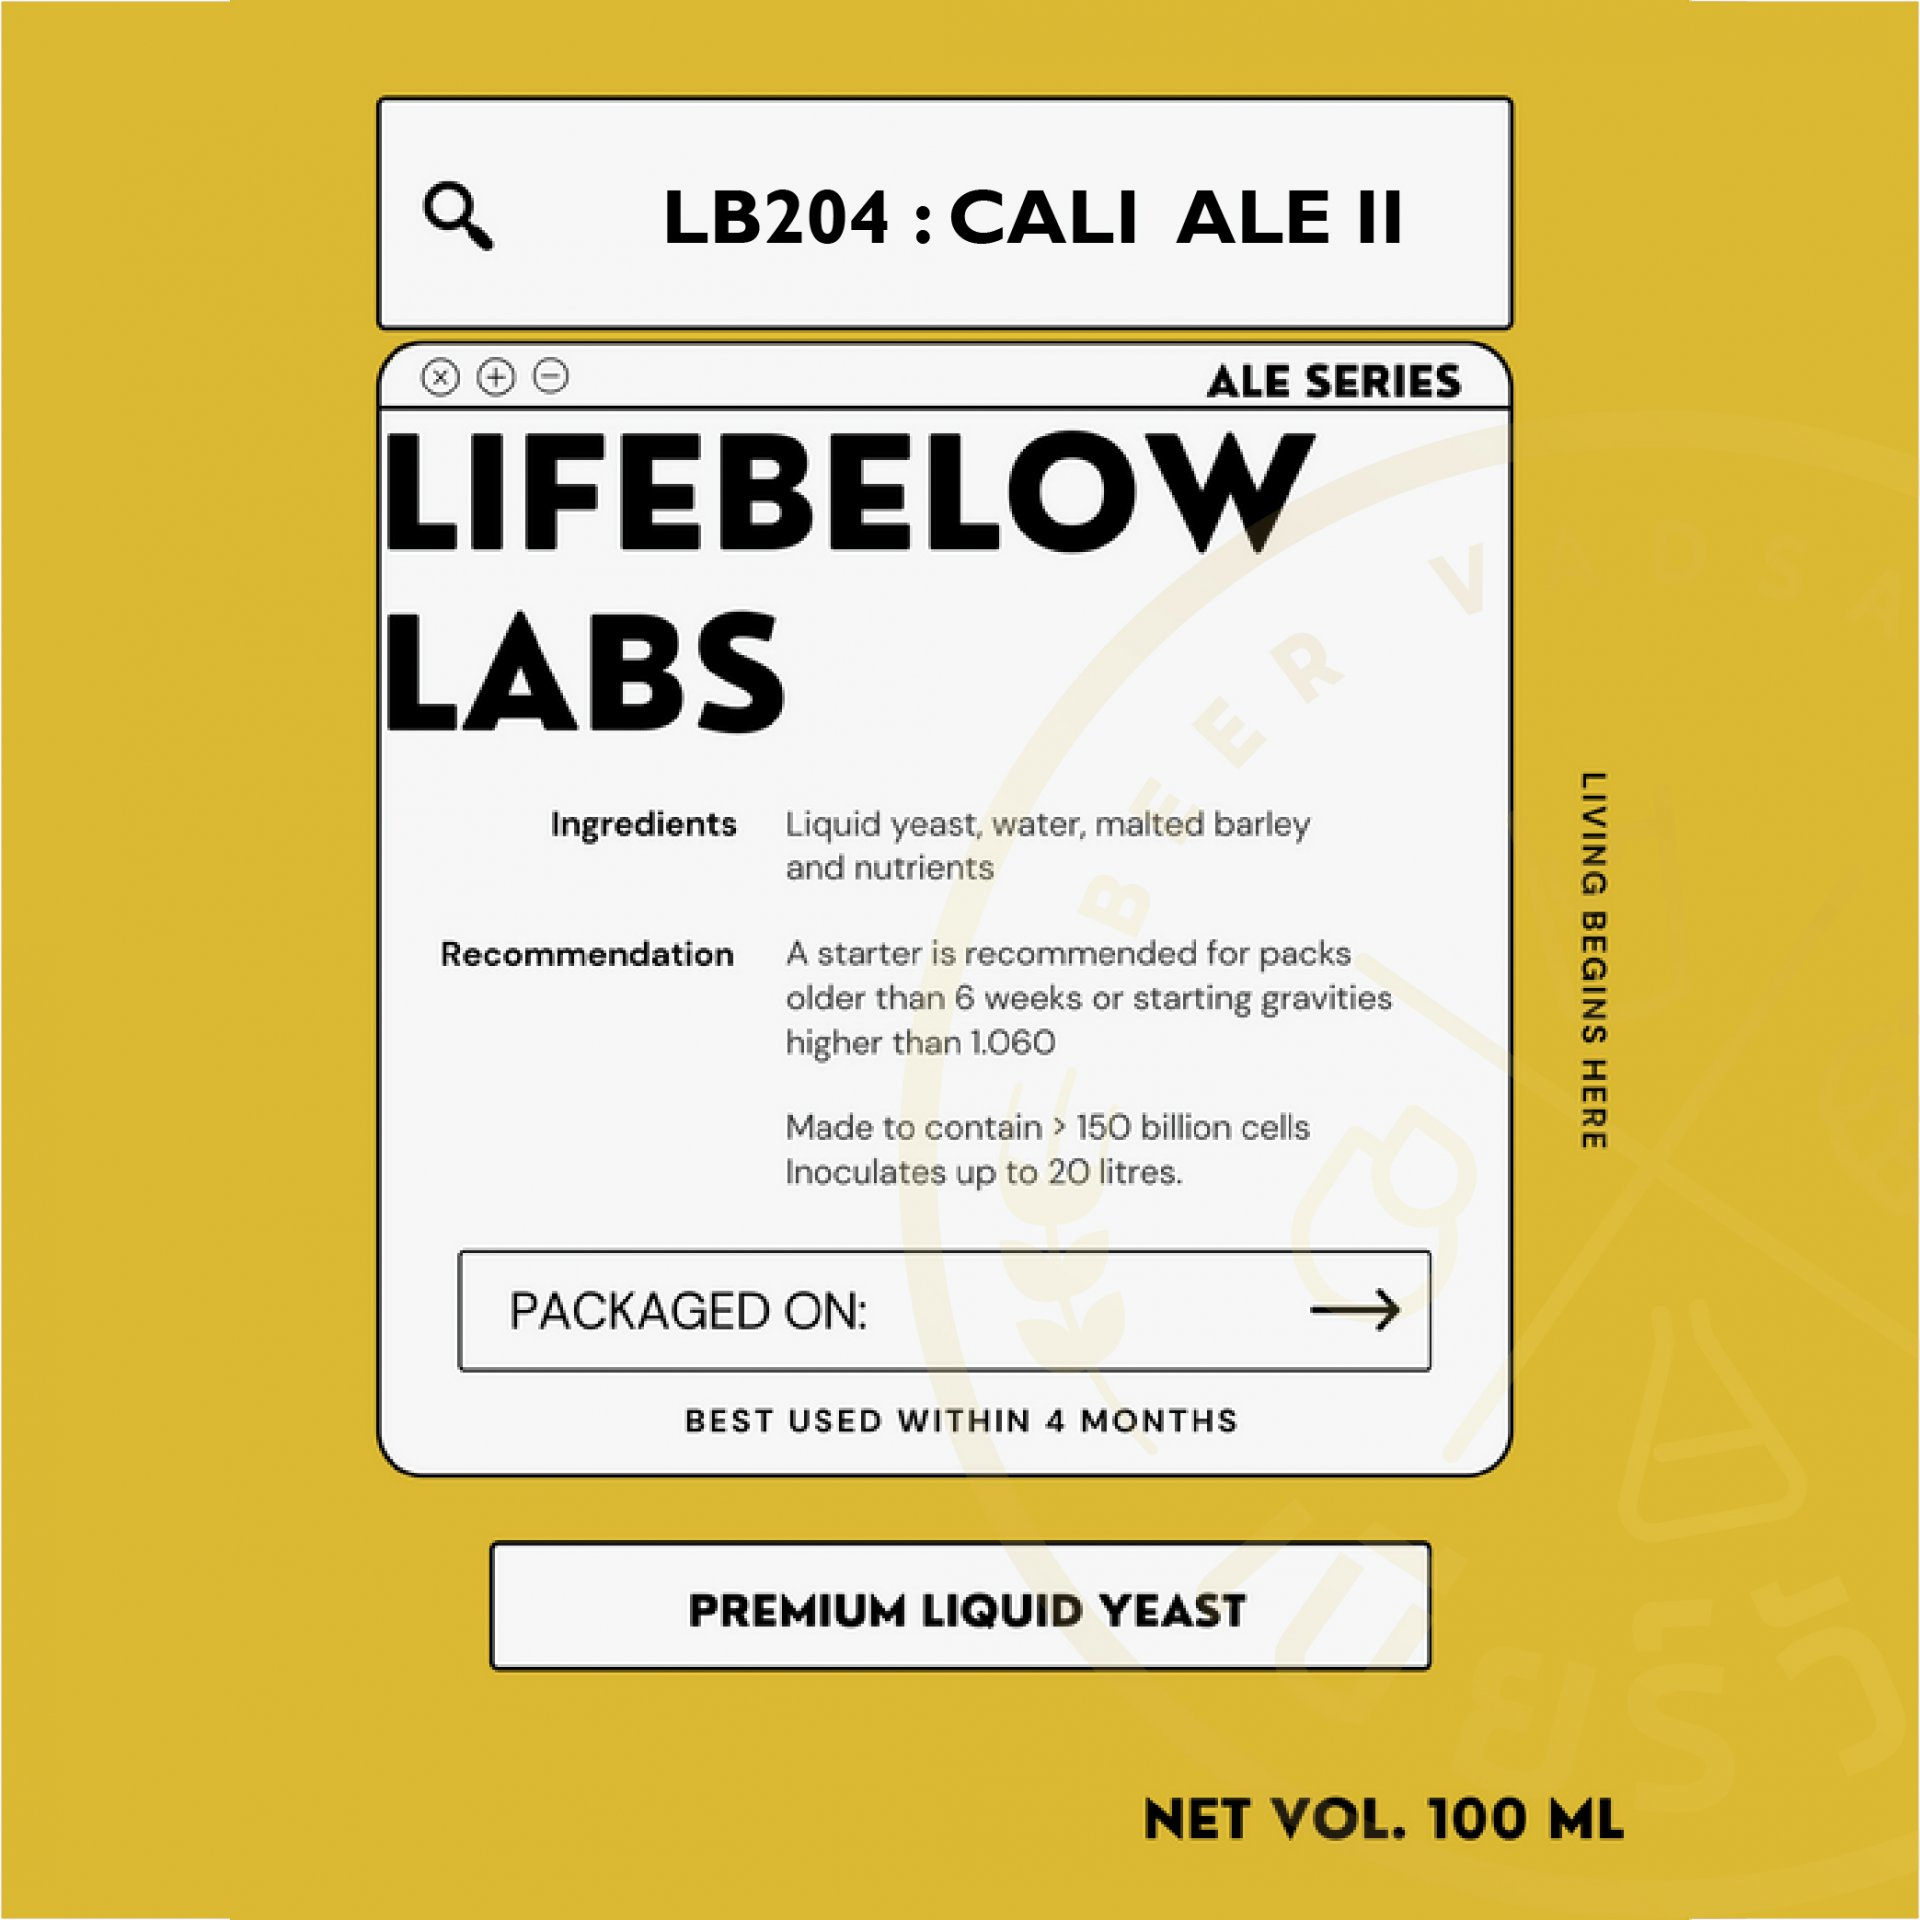 LB204 Cali Ale II (Life Below)